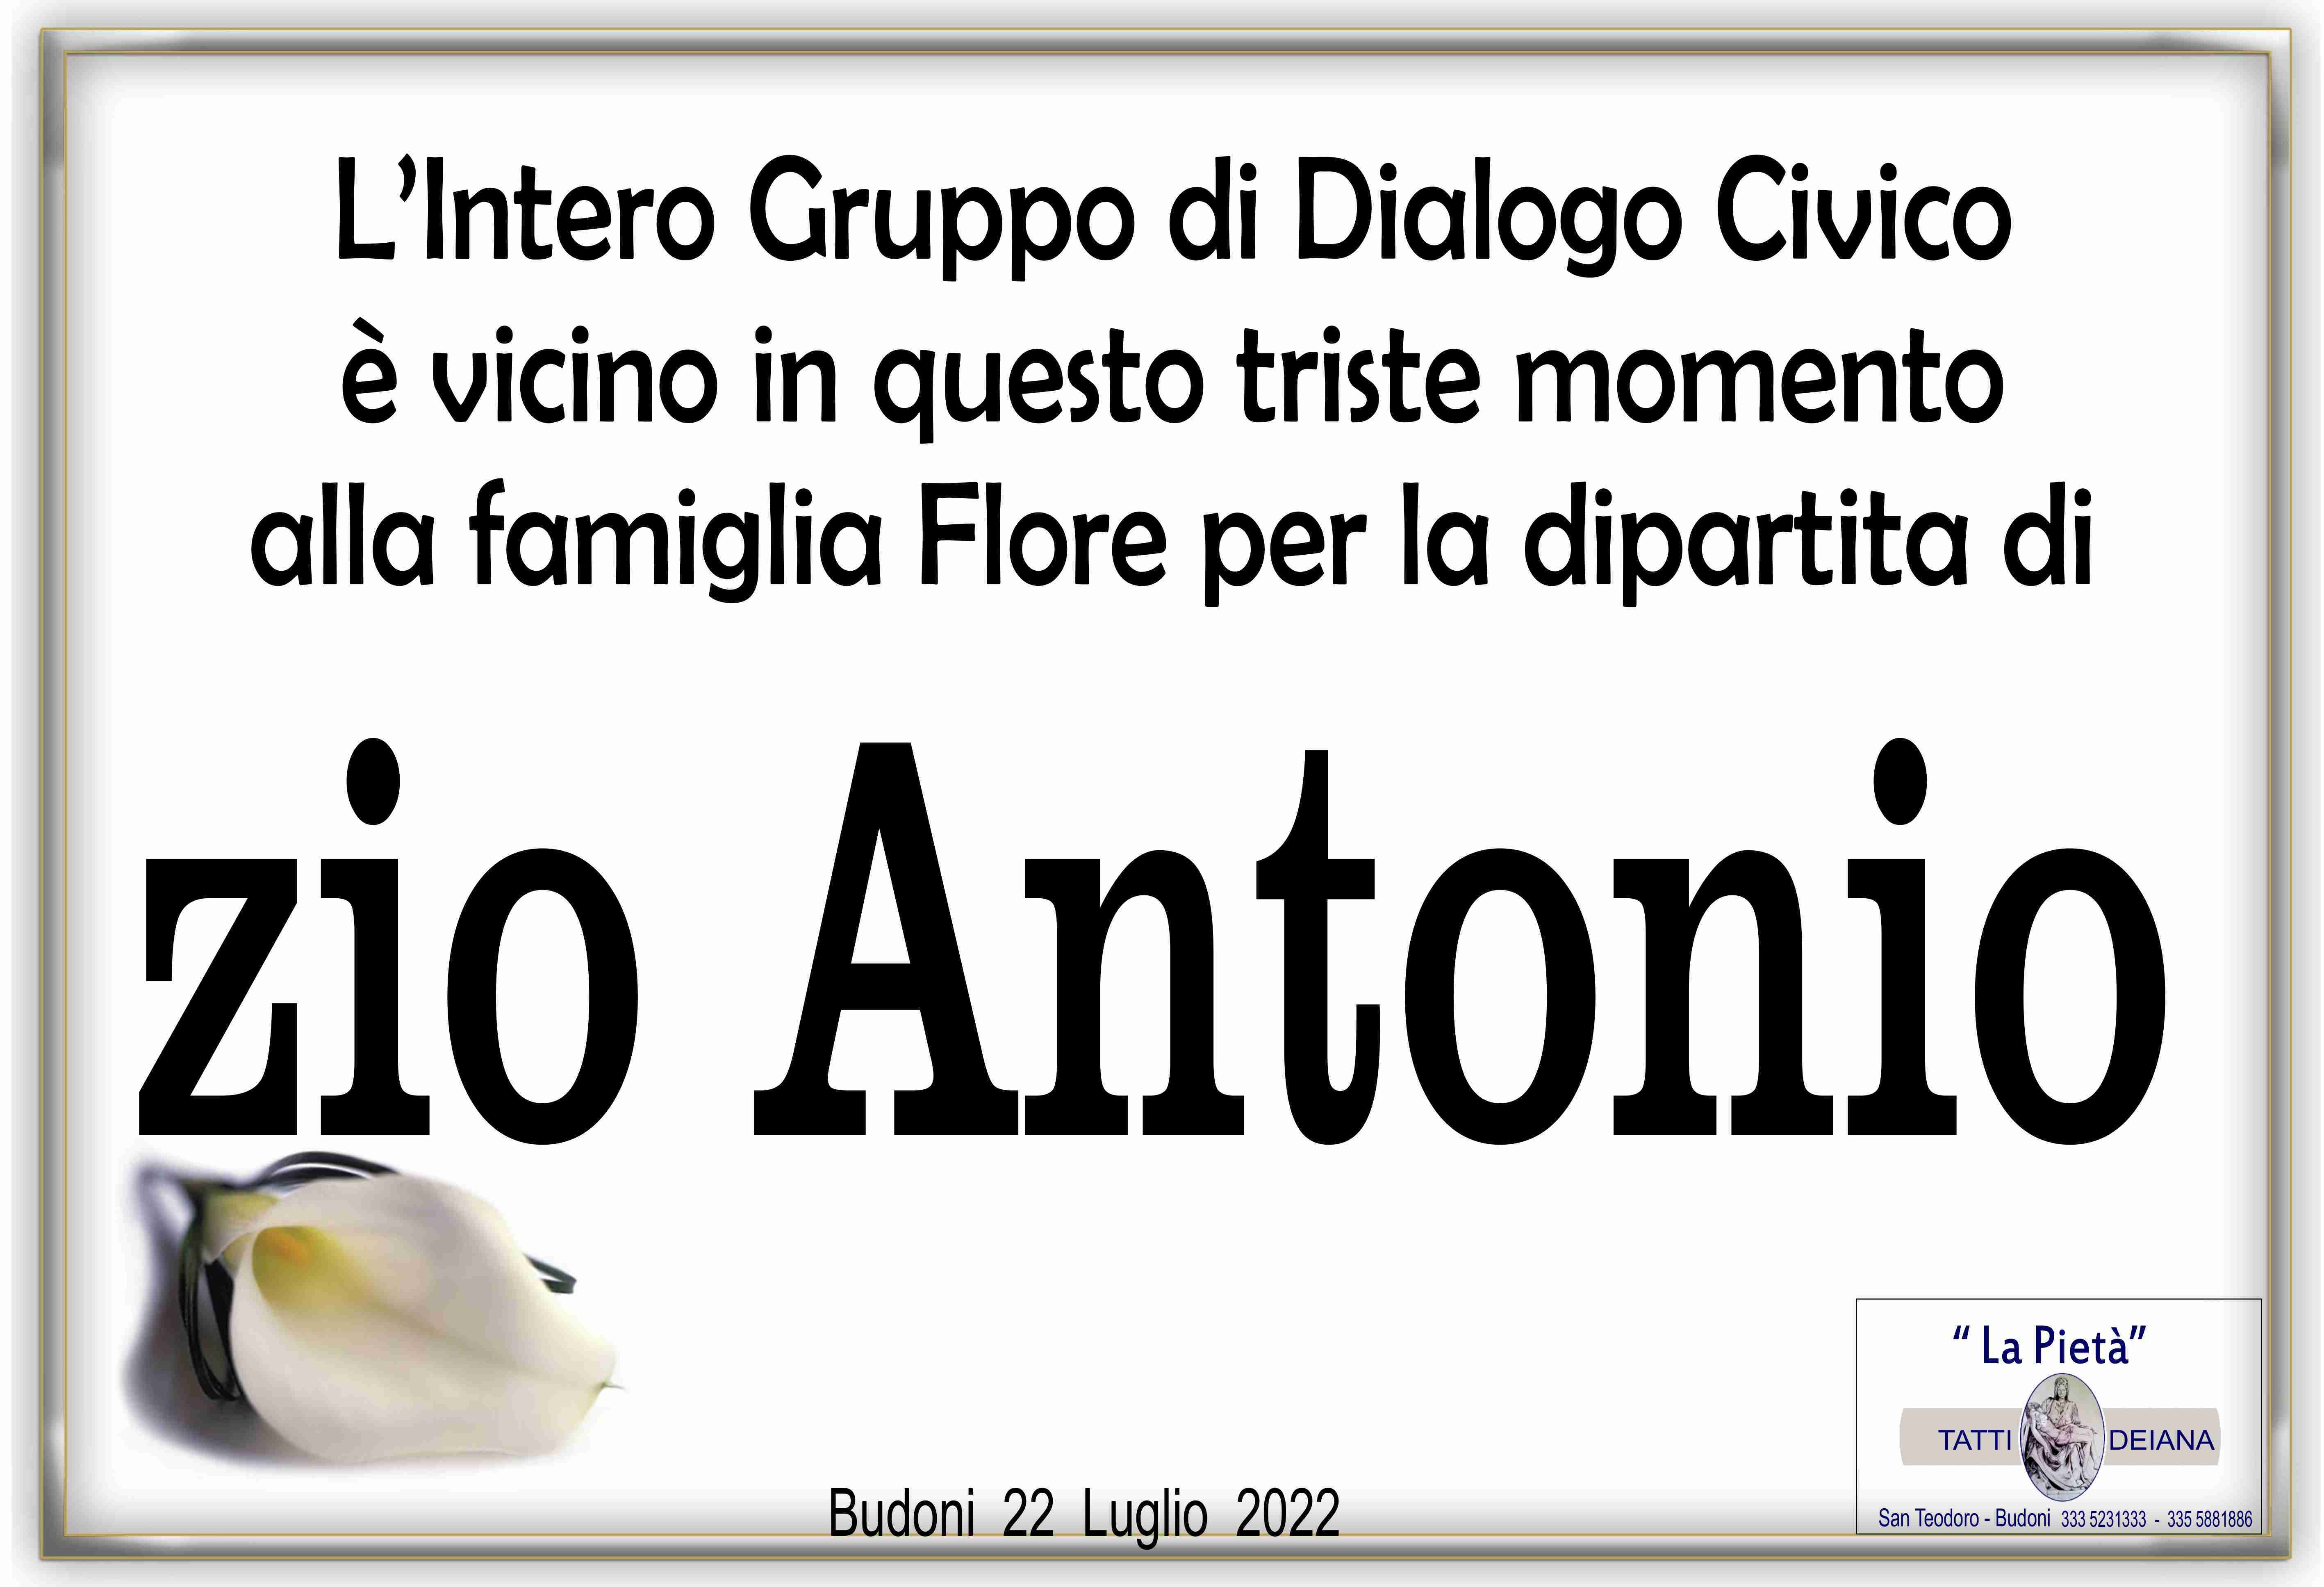 Antonio Flore